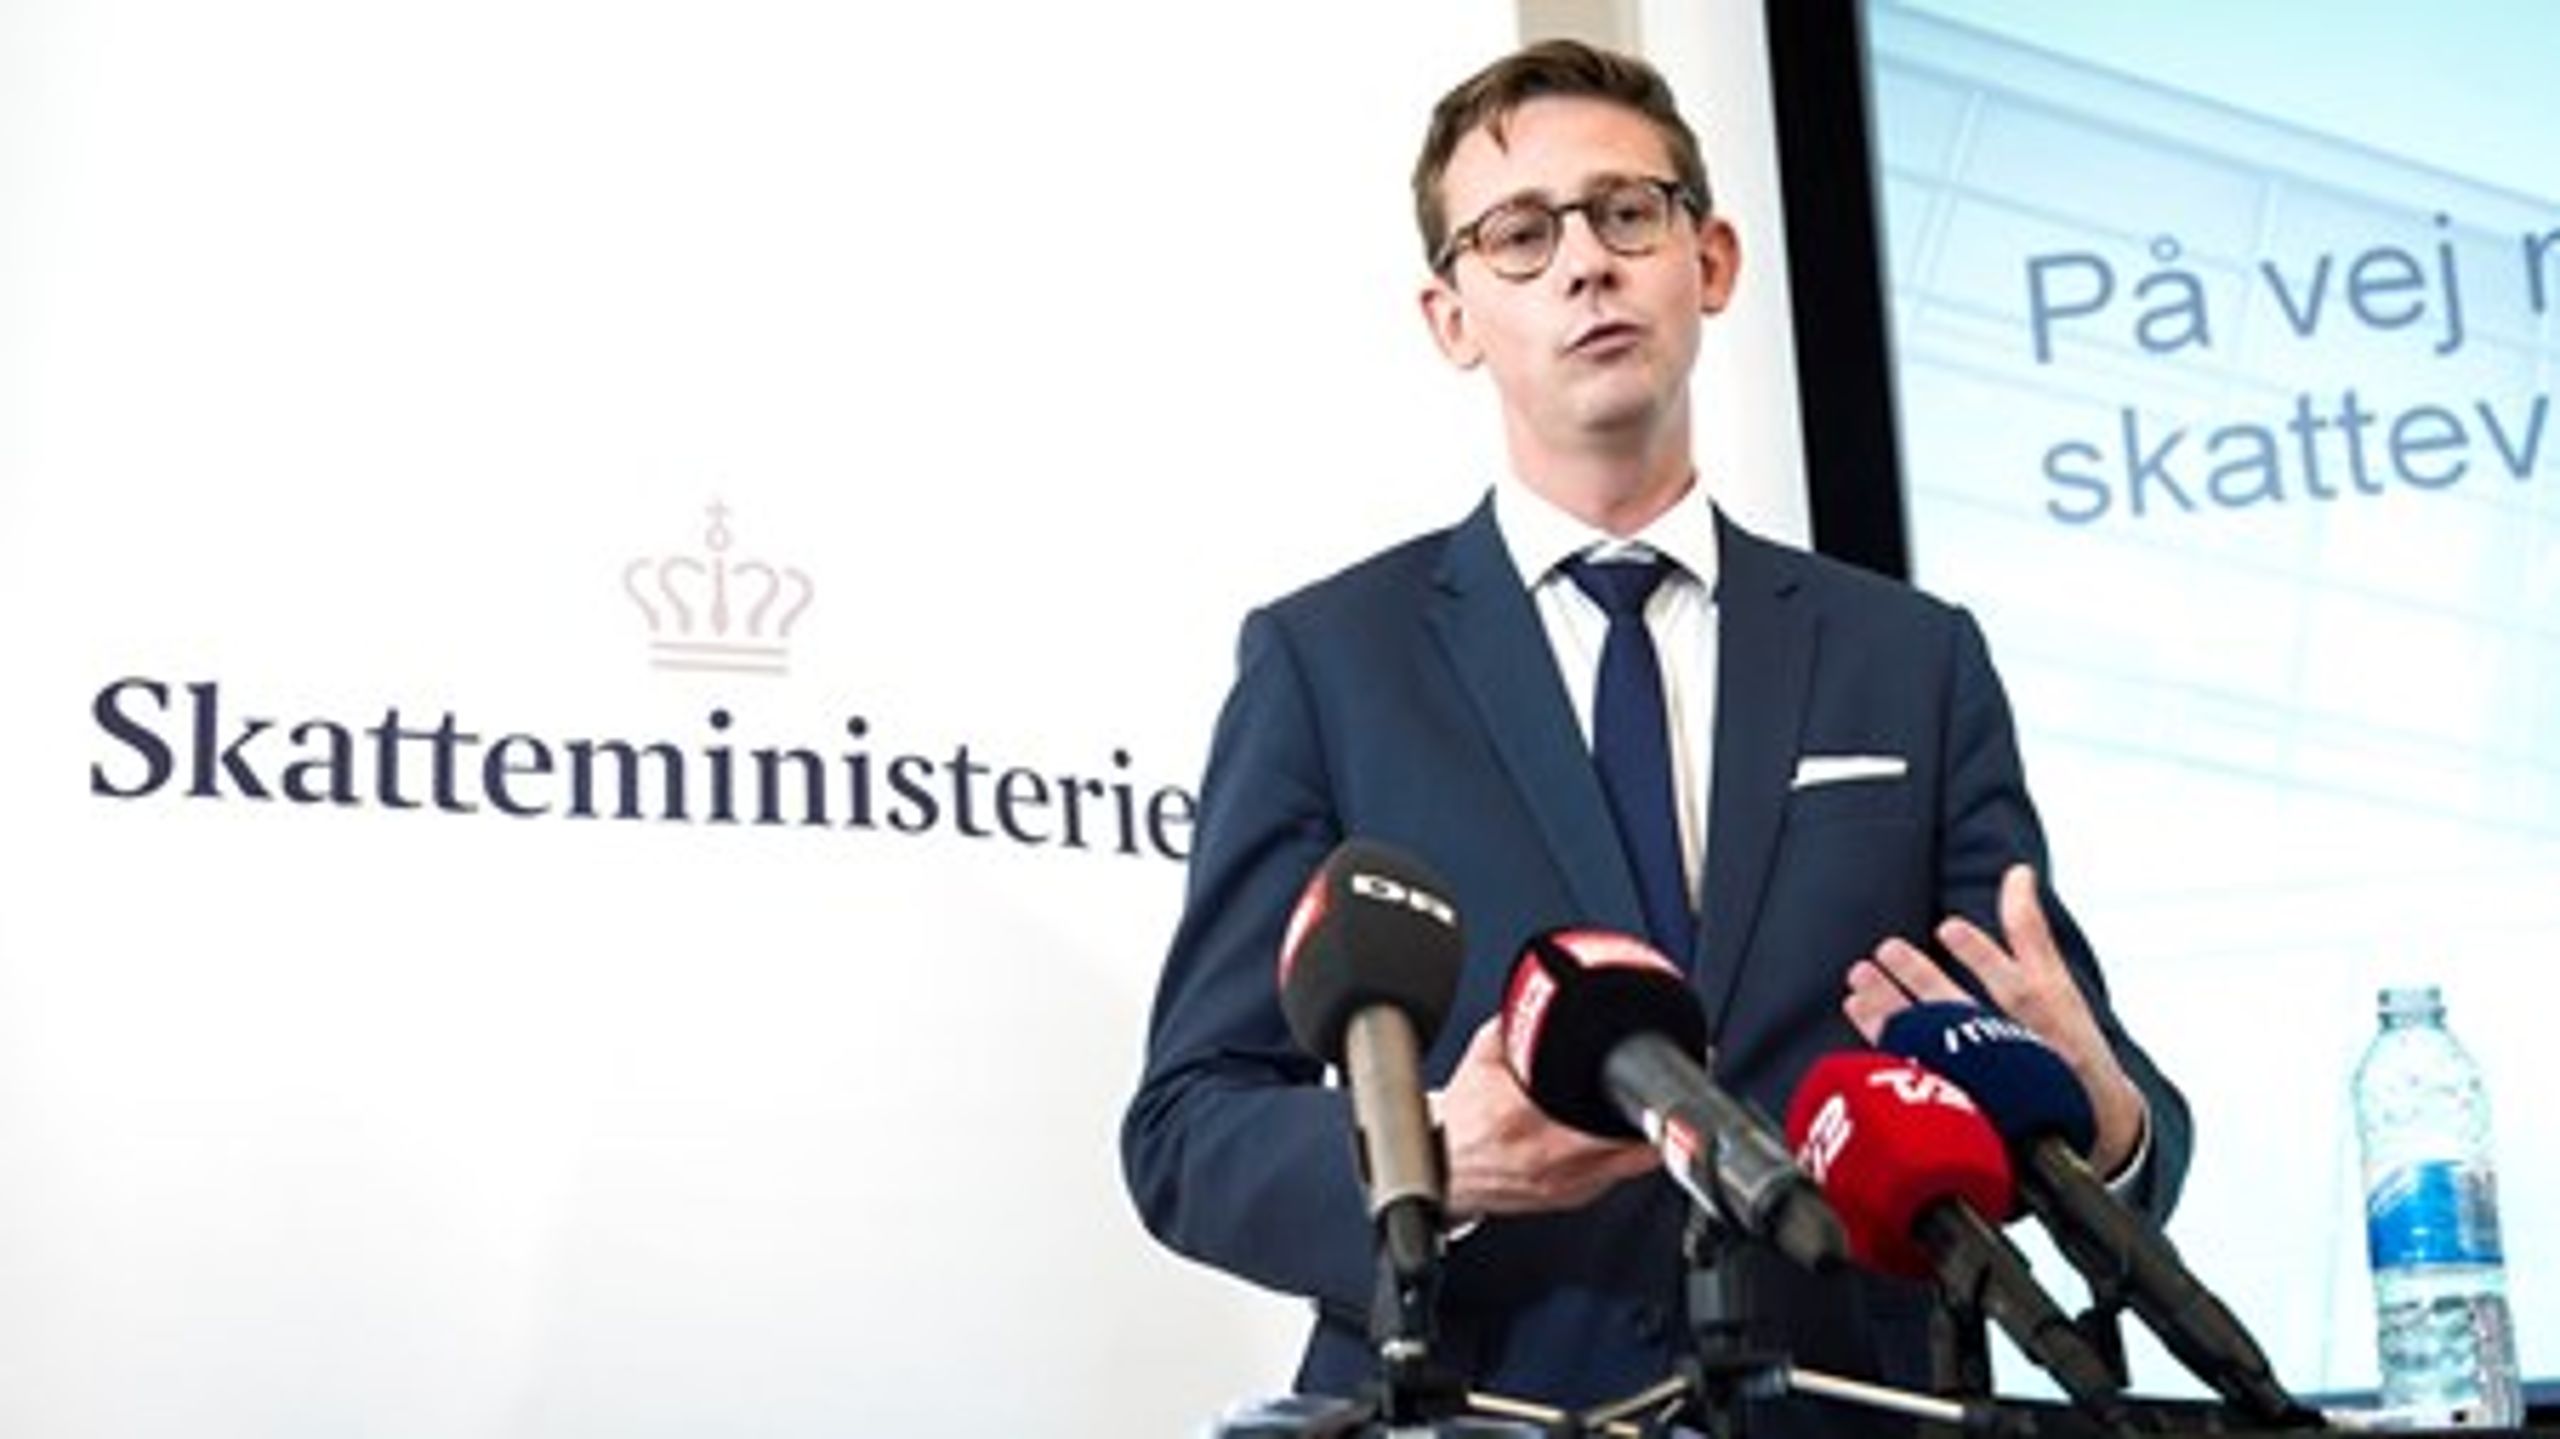 Skatteminister Karsten Lauritzen (V) åbnede på et pressemøde fredag op for igen at lade kommuner tage del i&nbsp;arbejdet med at inddrive borgere og virksomheders&nbsp;gæld til det offentlige.